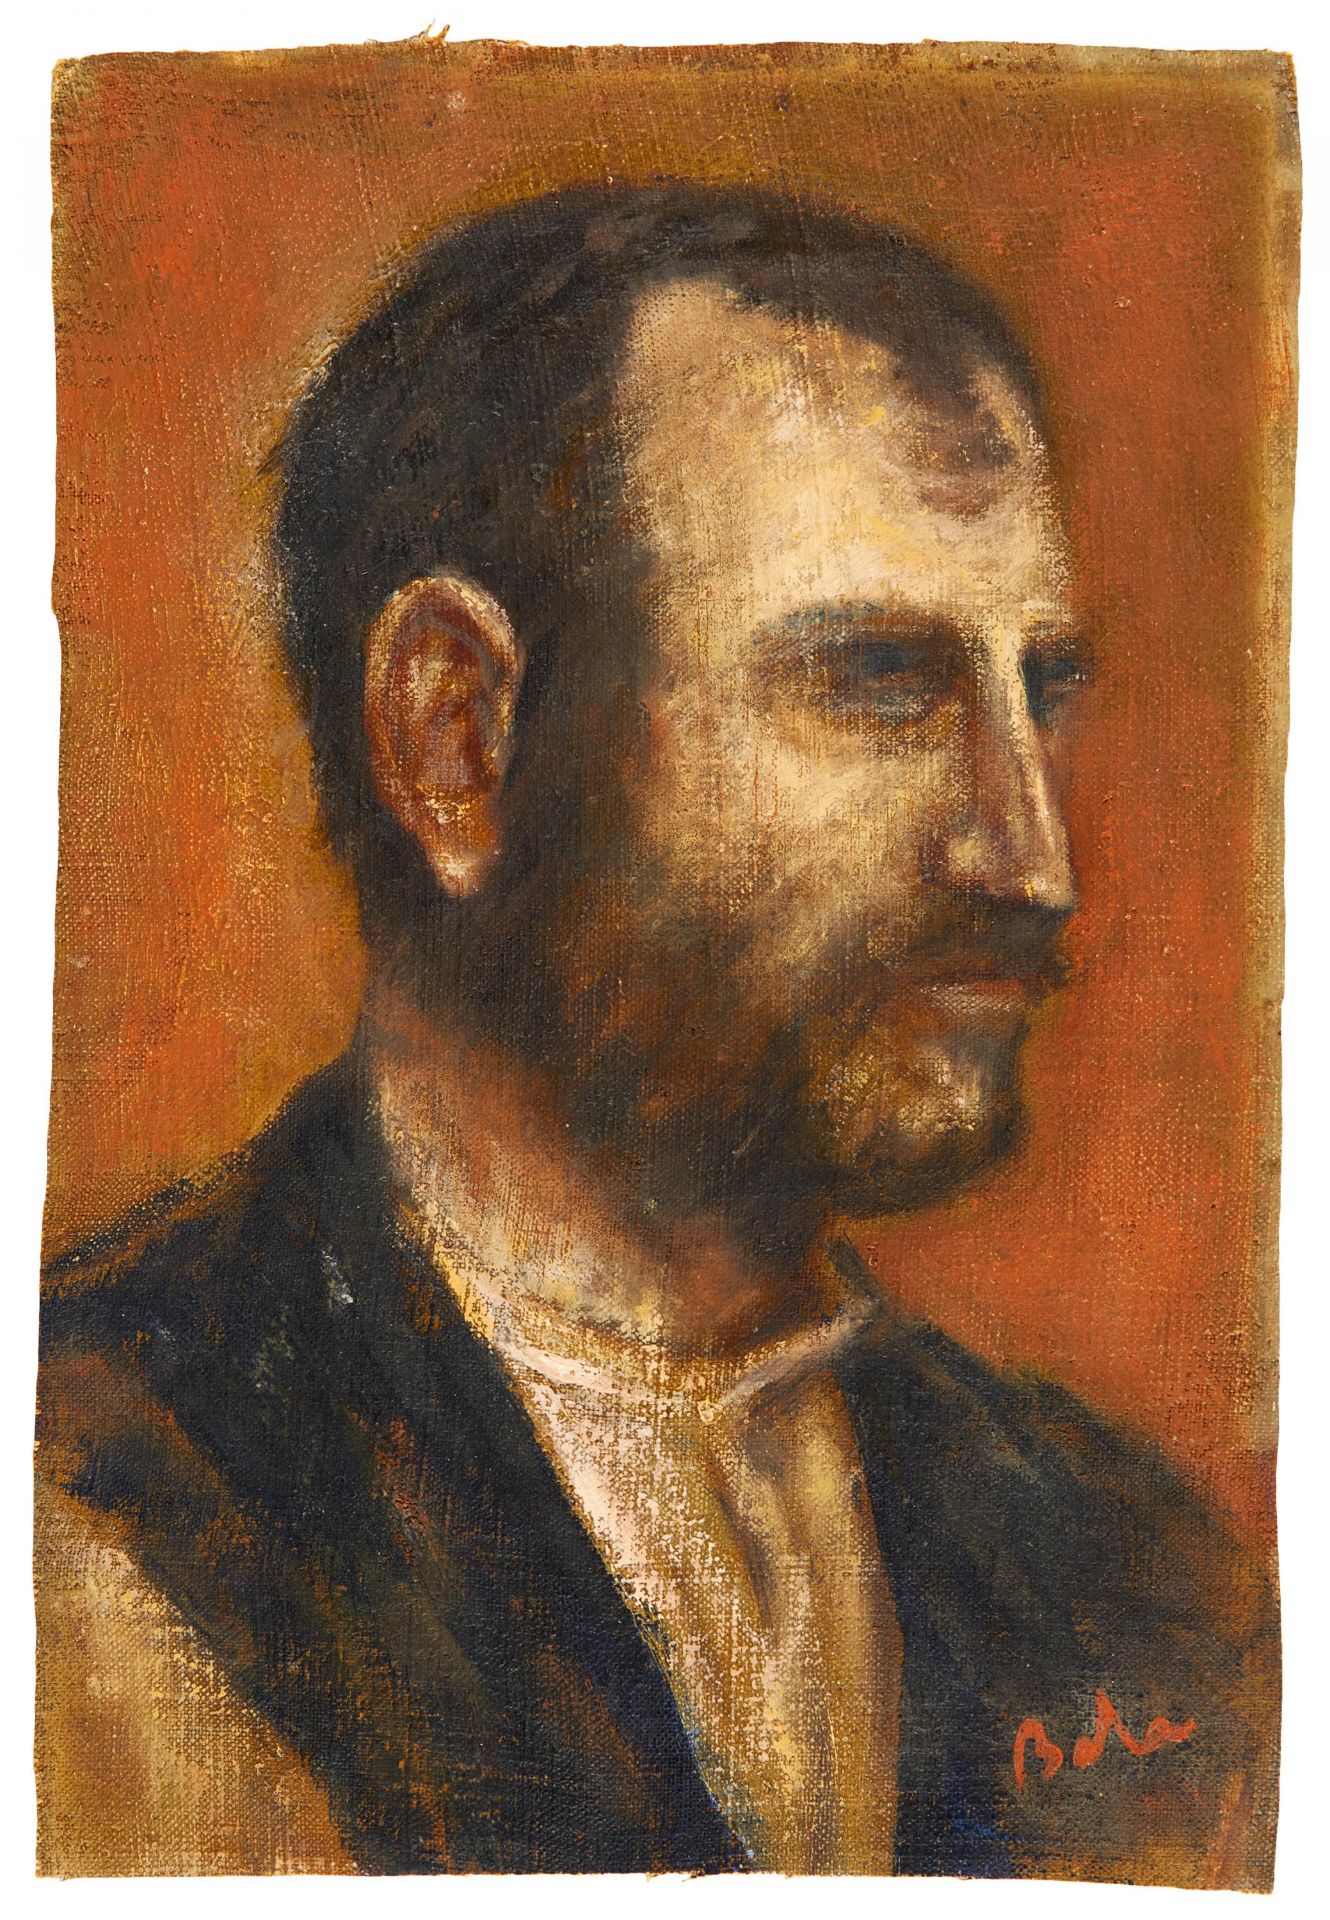 Baba, Corneliu 1906 Craiova/Rumänien - 1997 Bukarest Porträt eines Mannes im Profil. Öl auf Leinwand